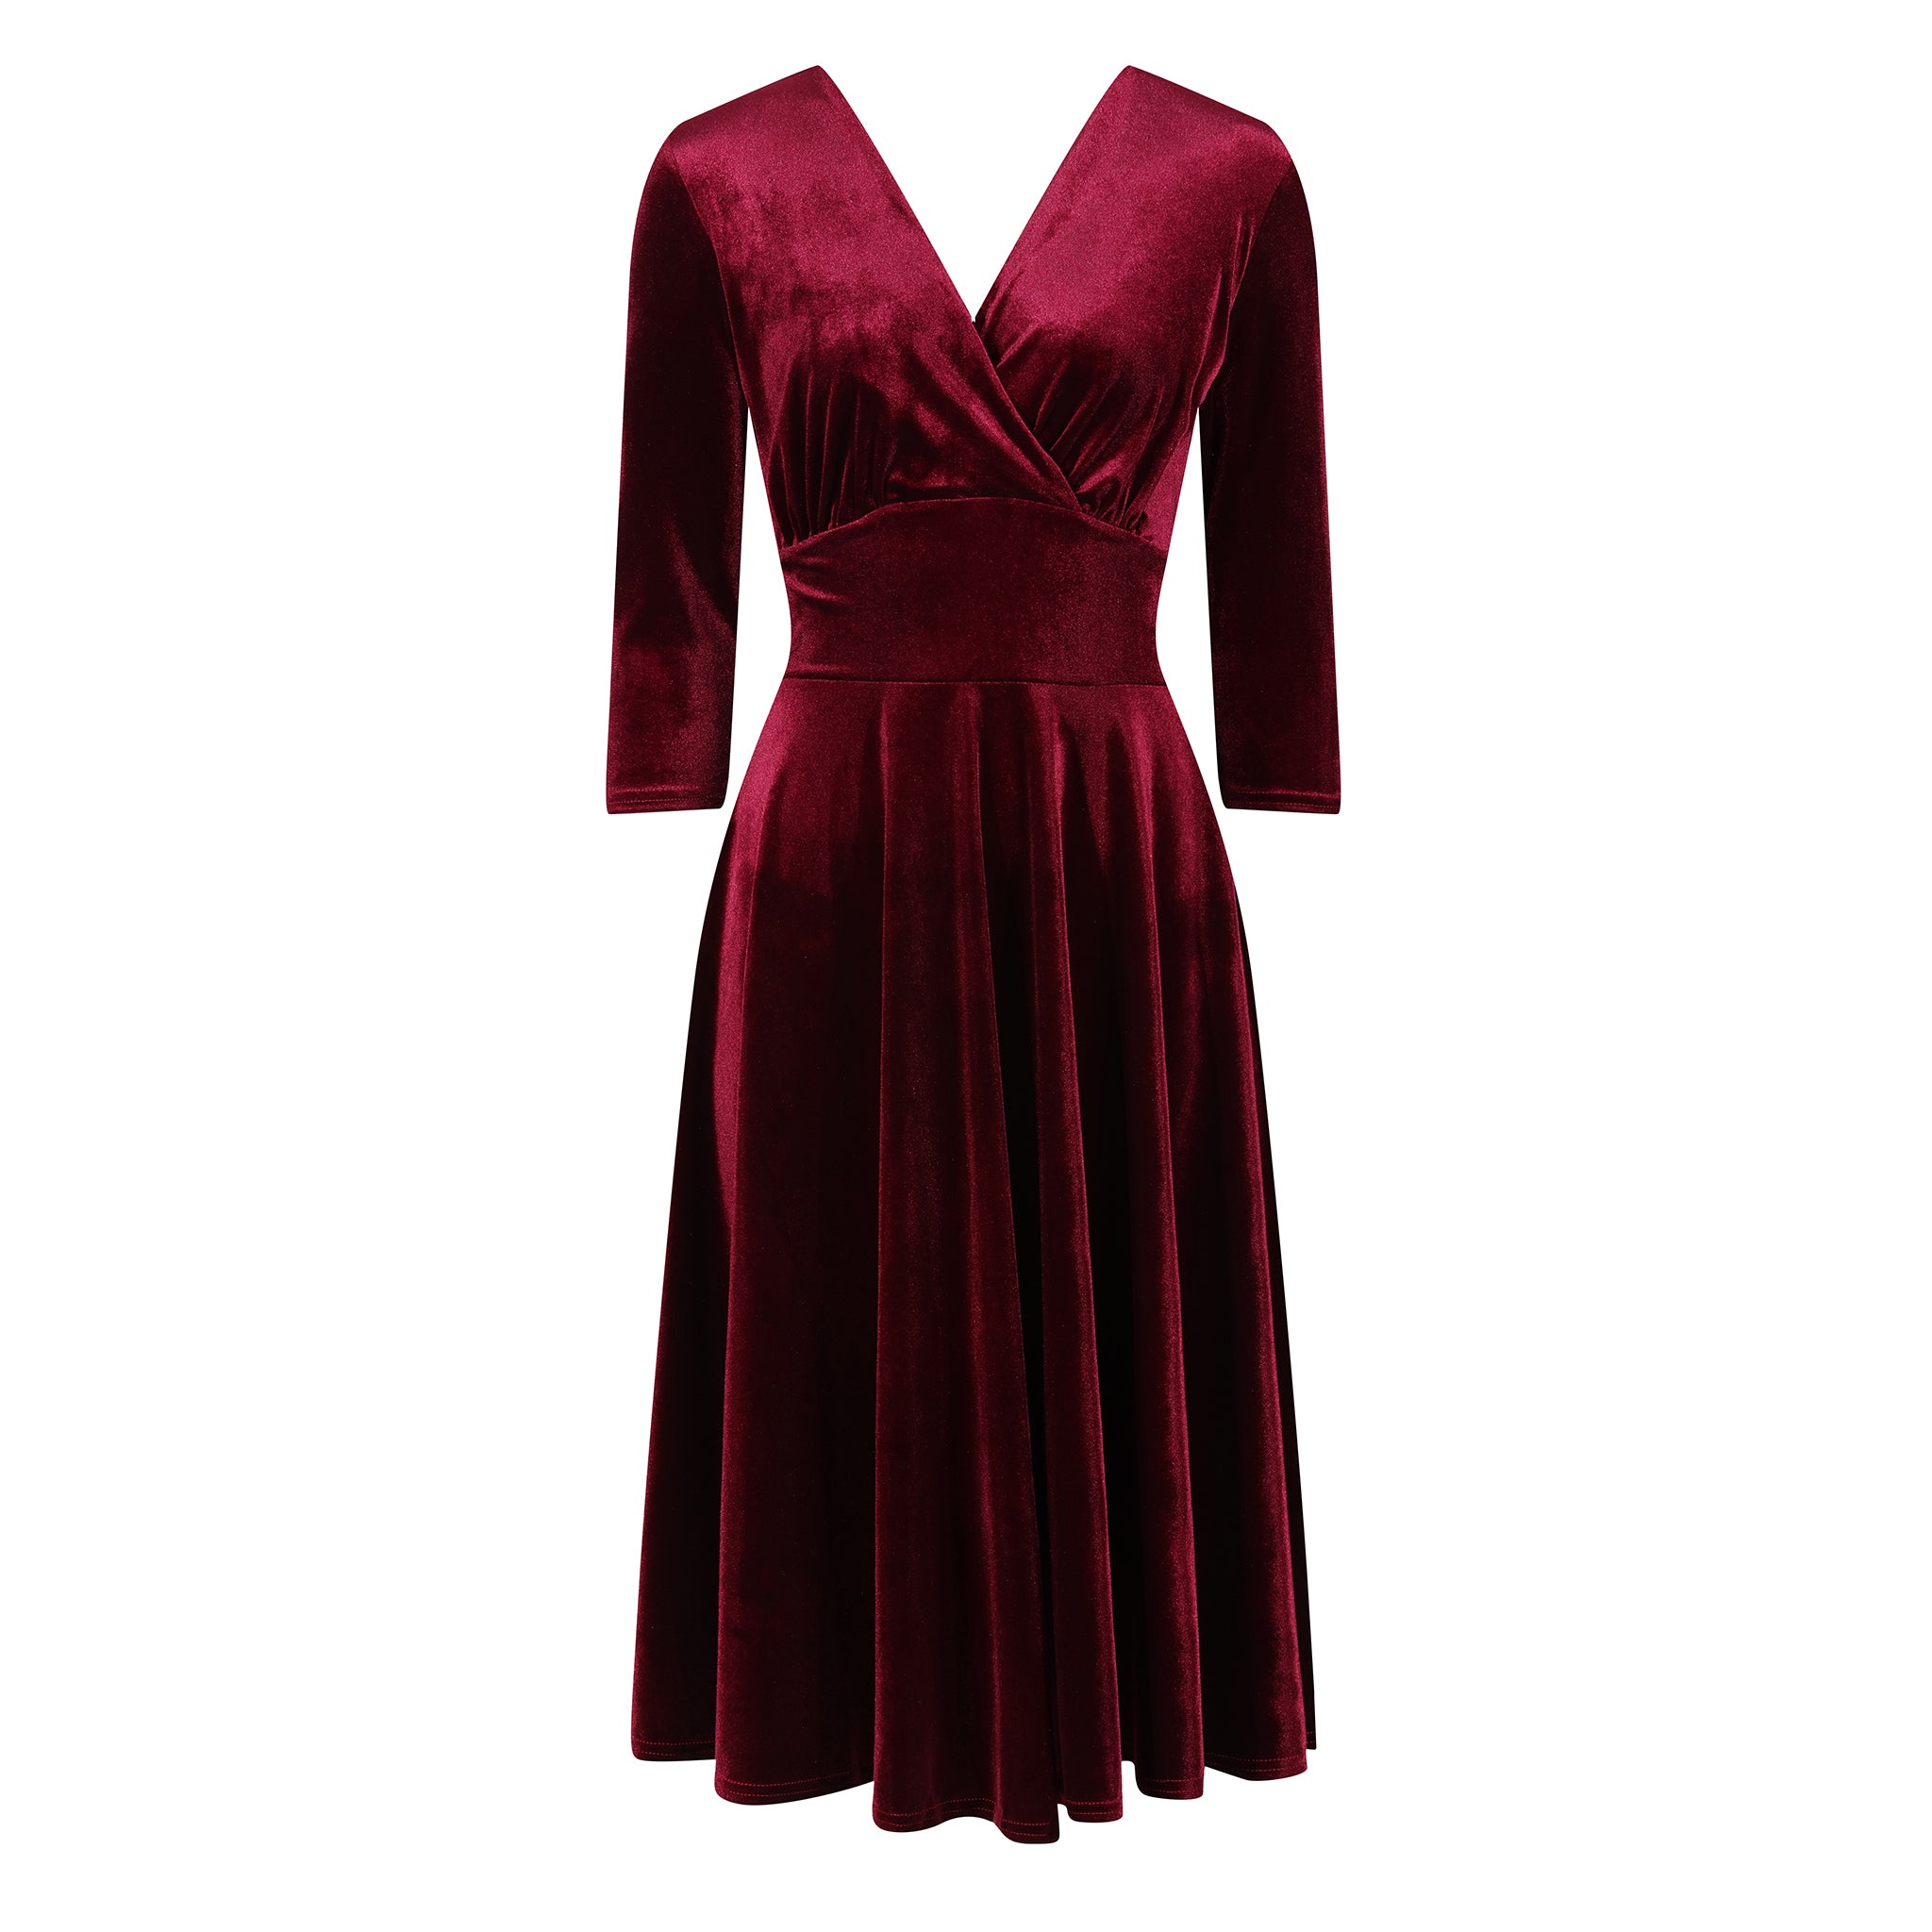 Claret Red Velour Deep V Wrapover 3/4 Sleeve Swing Dress